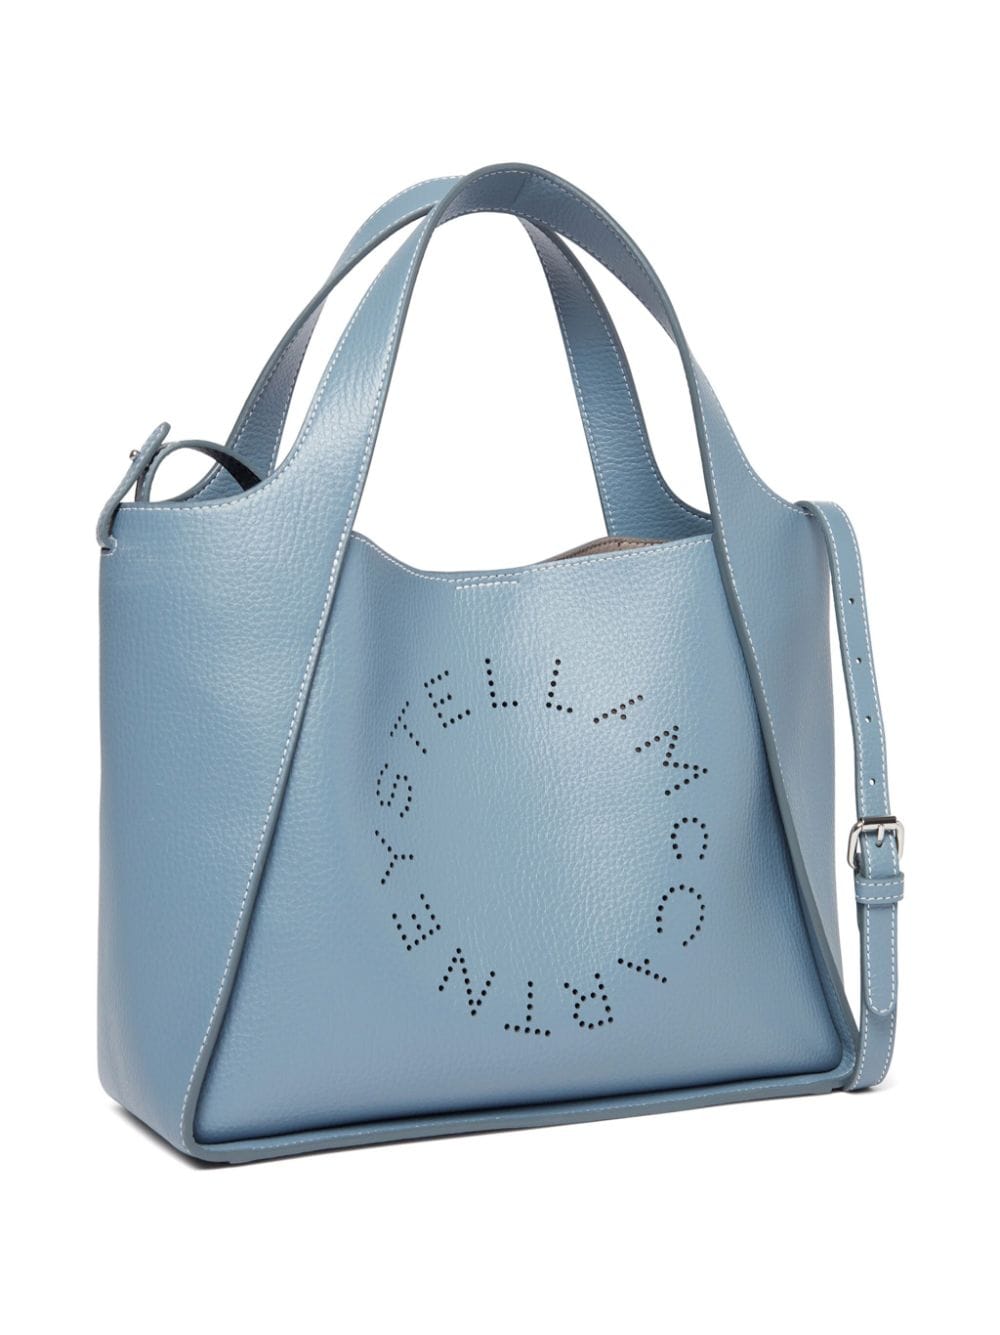 天空藍色品牌雕花手提包 - 多功能豪華款式